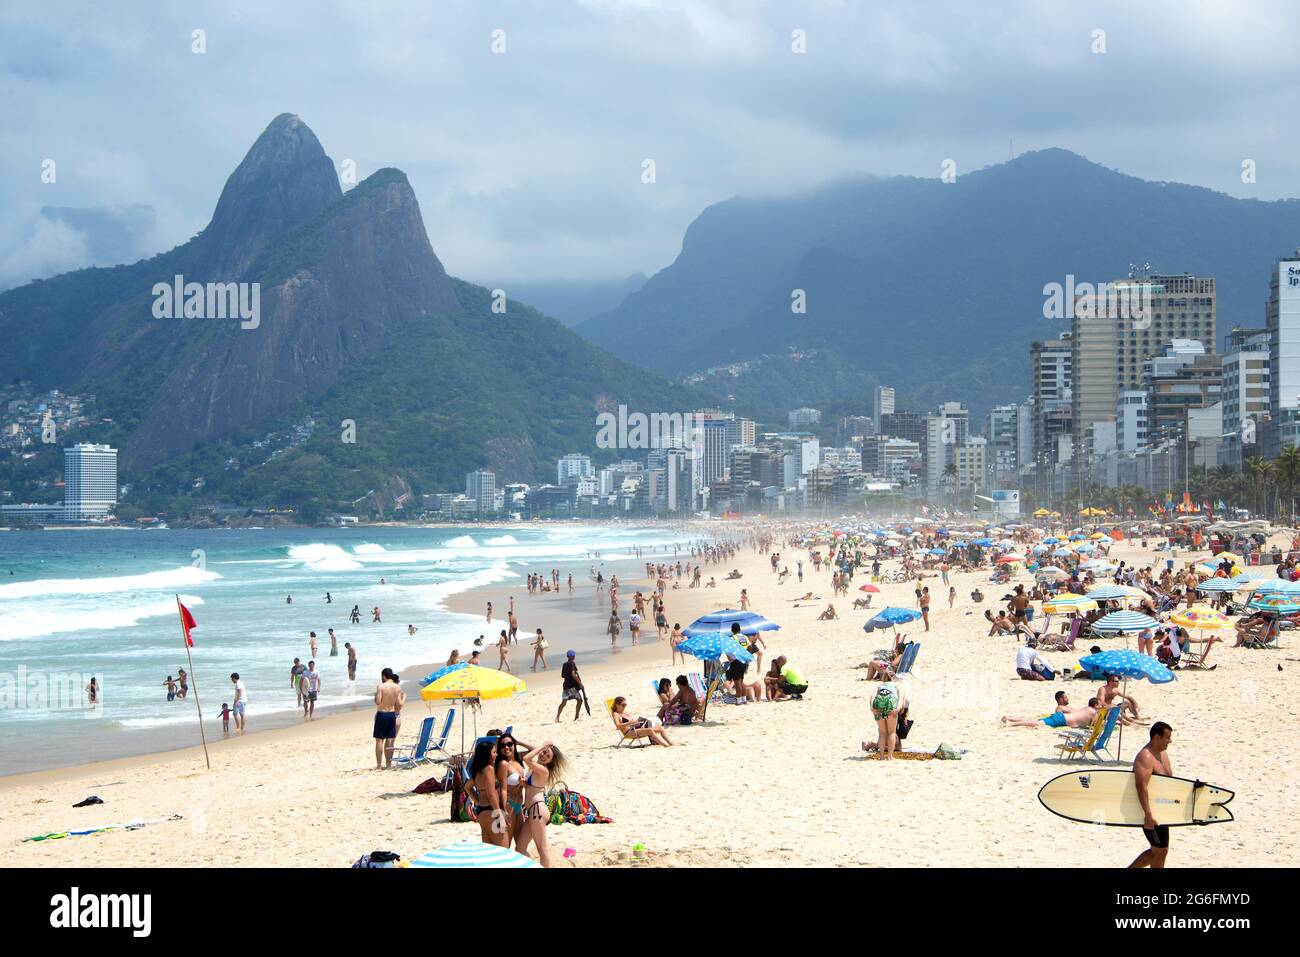 Rio de Janeiro, Copacabana beach. Brazil. Stock Photo